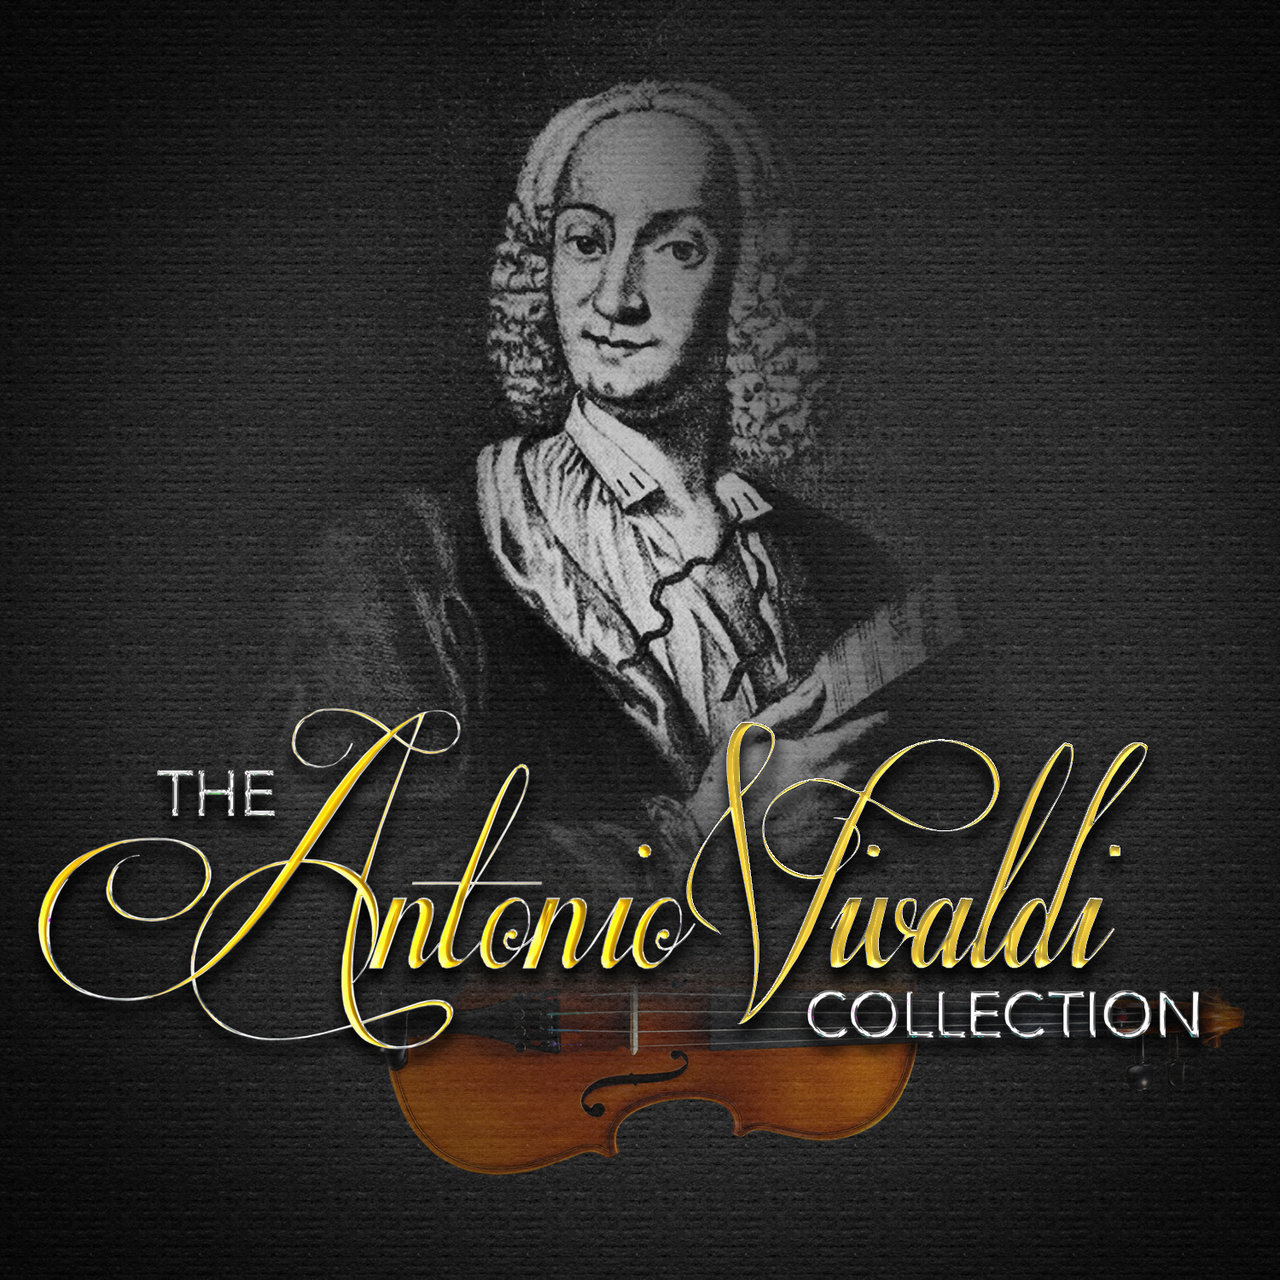 Слушать вивальди без рекламы. Антонио Вивальди. Antoniyo Vivaldi. Вивальди портрет композитора. Антонио Лучио Вивальди.